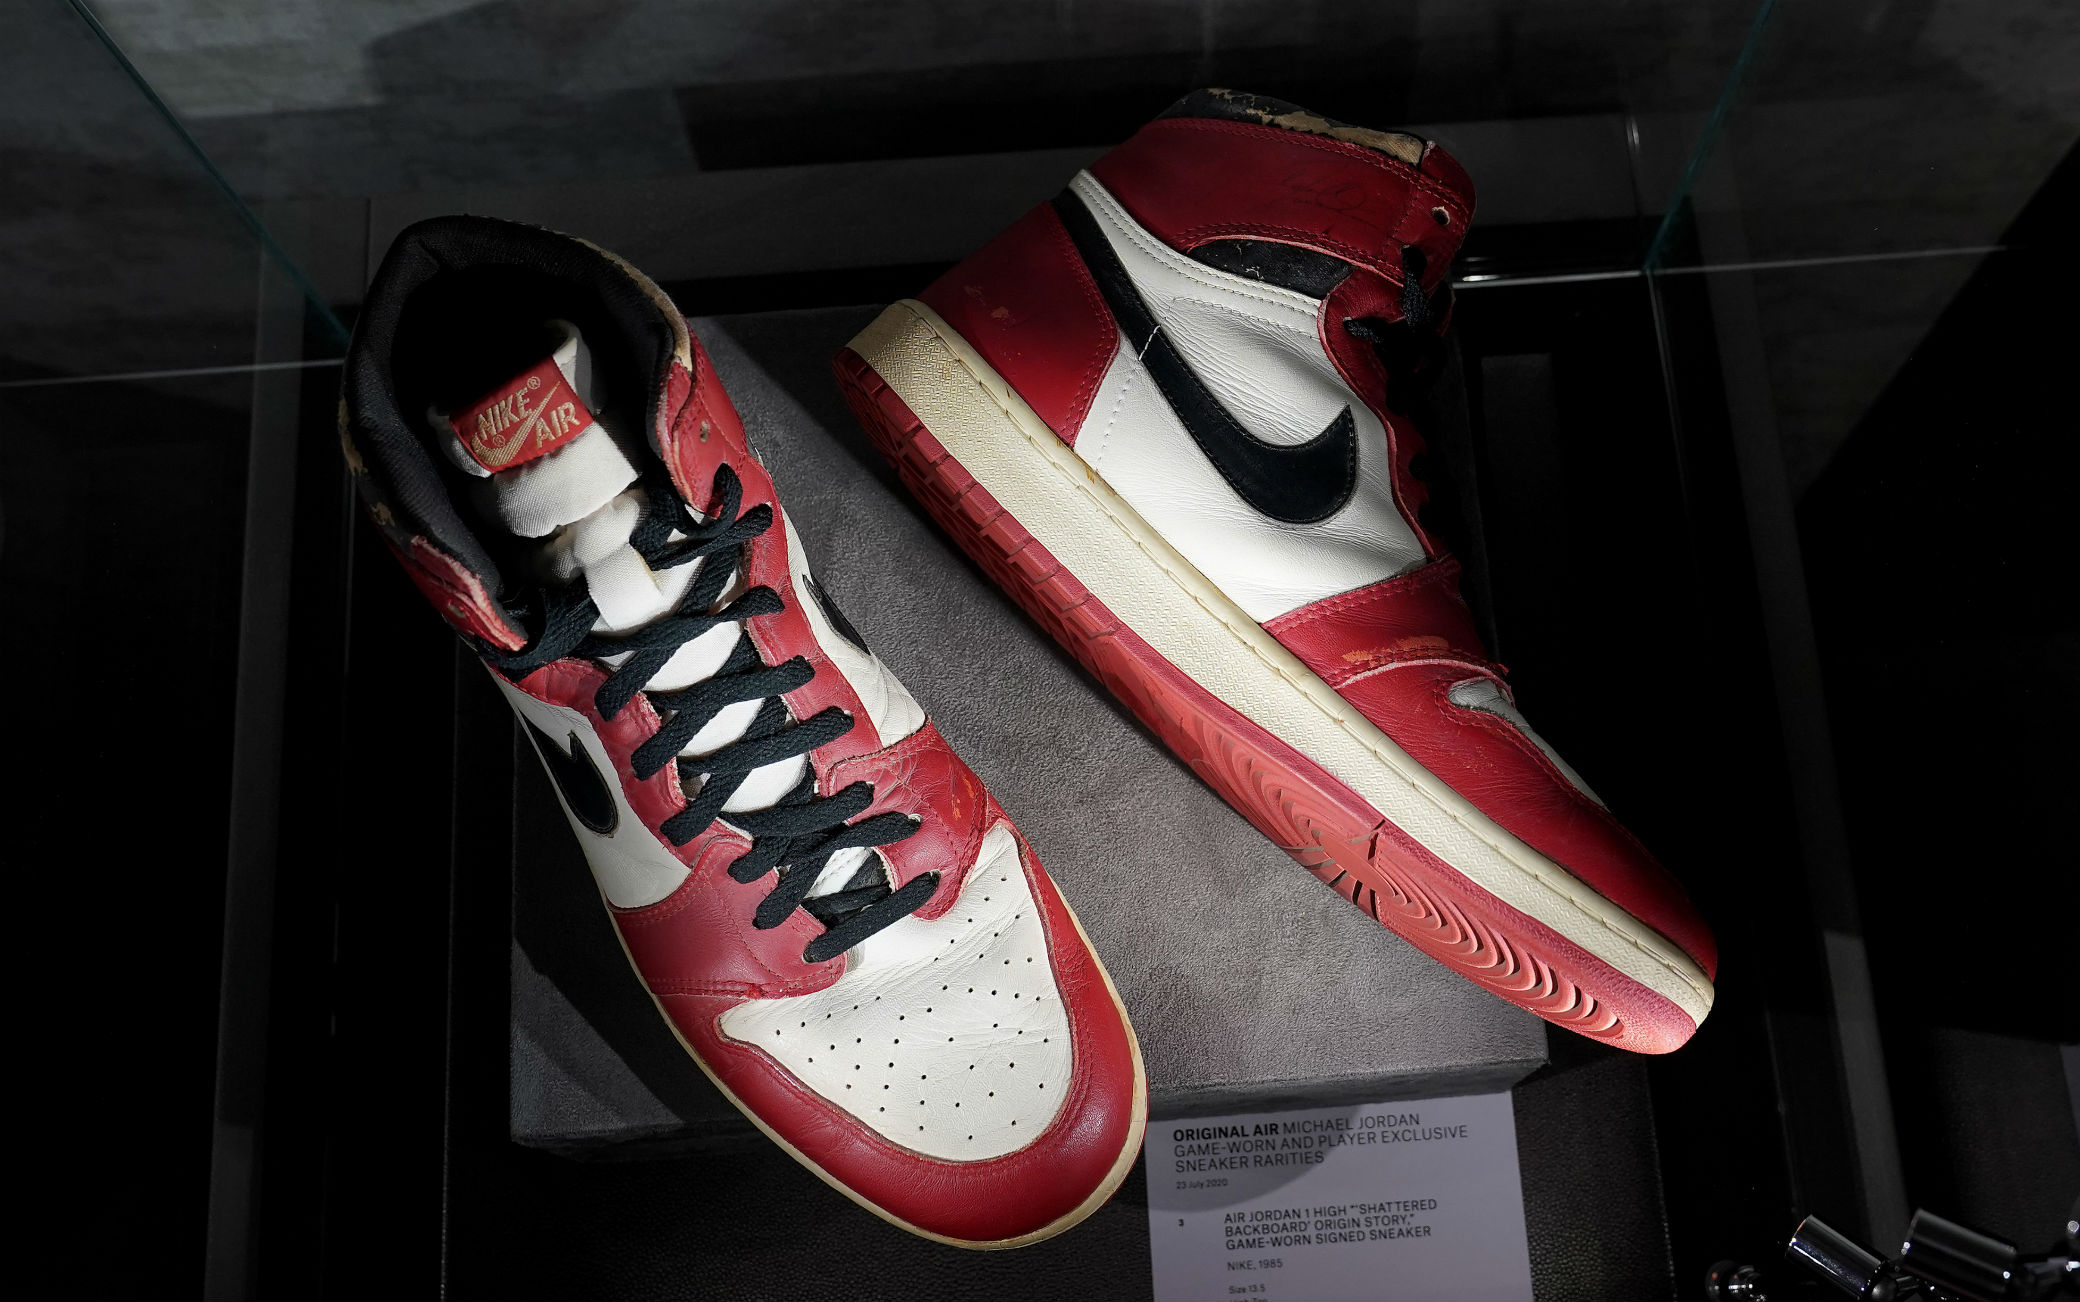 Le scarpe di Michael Jordan usate a Trieste nel 1985 vendute all'asta per  615mila dollari